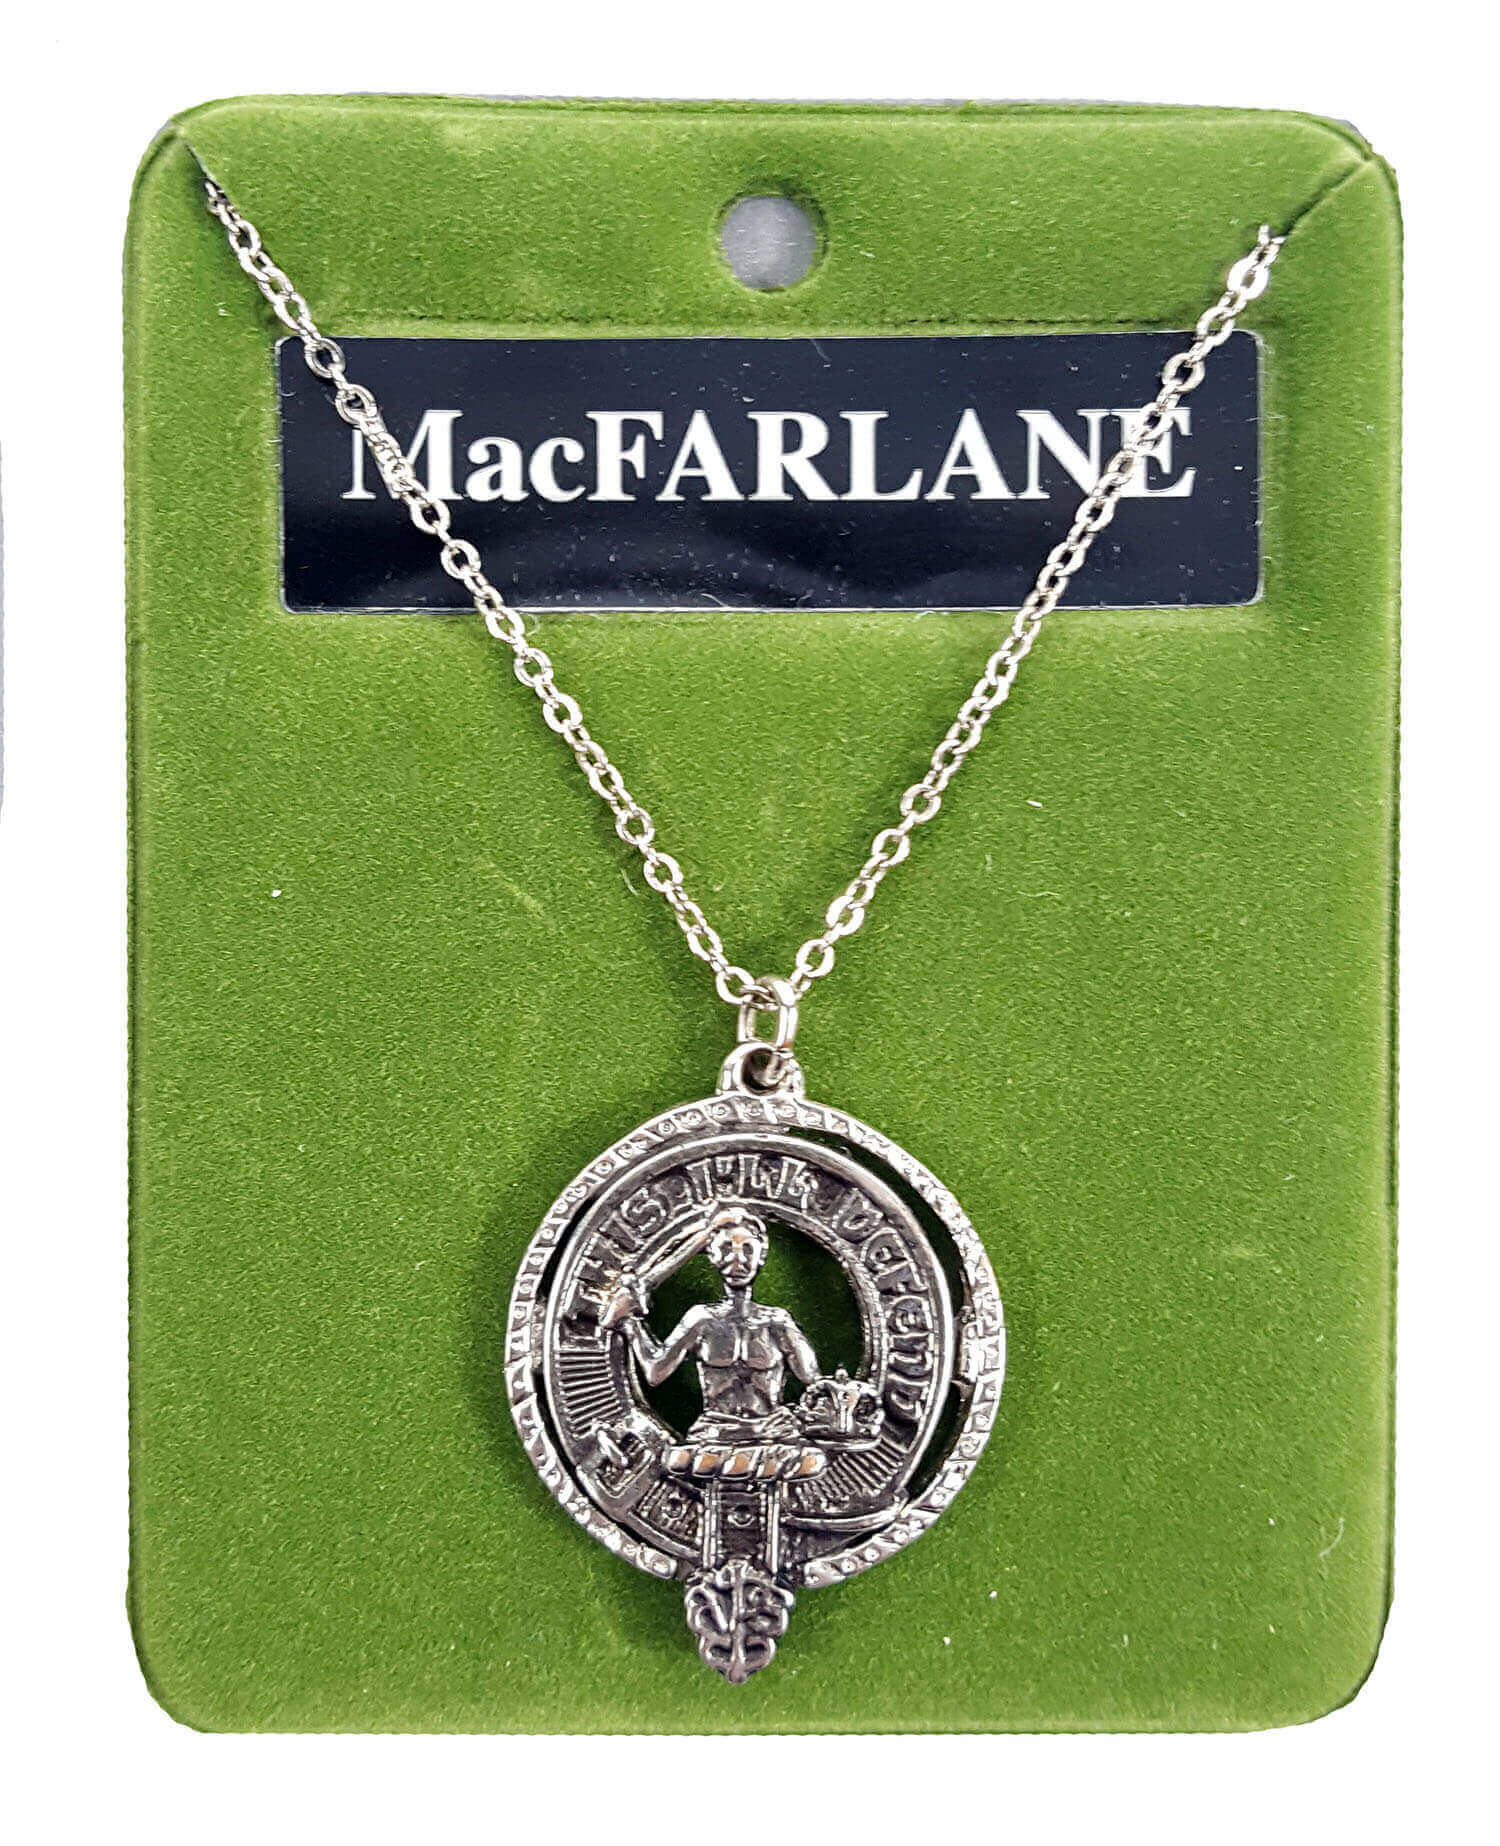 MacFarlane Clan Crest Solid Pewter Key Chain Scottish Clan